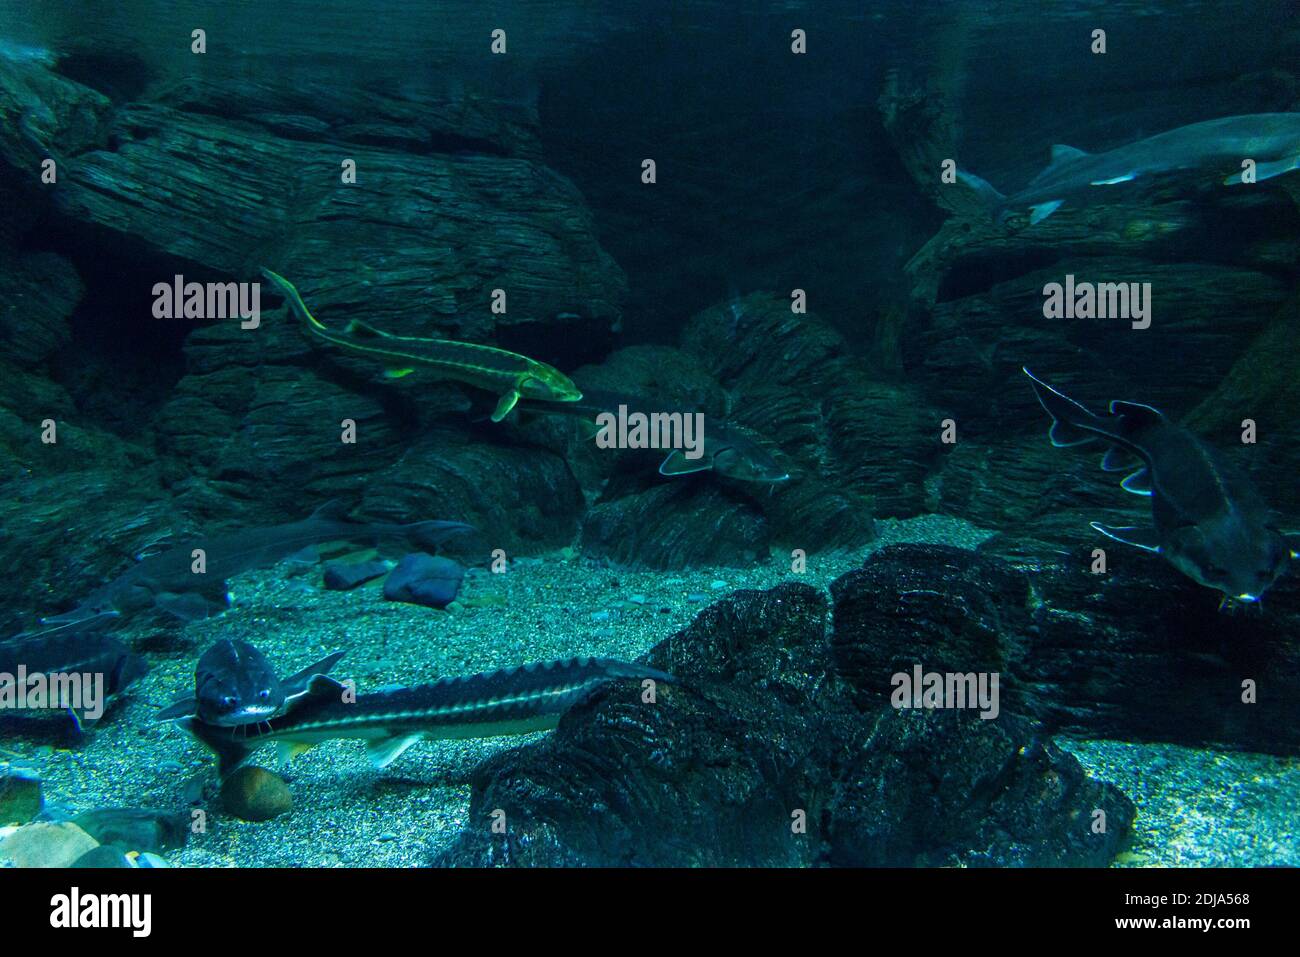 Stör oder Acipenser im Süßwasser des Aquariums. Stockfoto